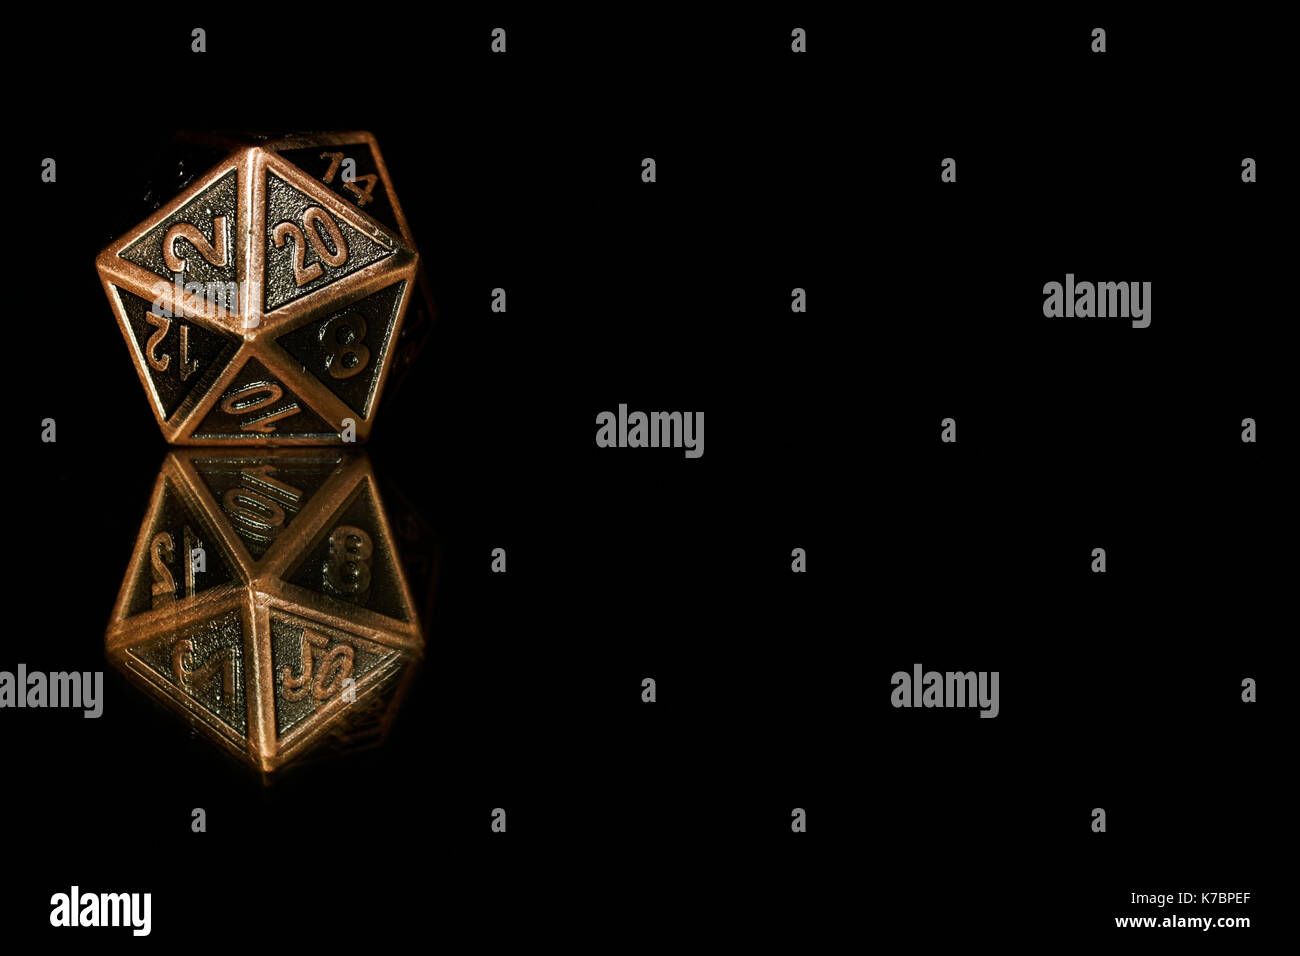 Una ventina di facciata poliedrica muoiono su una superficie a specchio. Questi tipi di dadi sono utilizzati per i giochi di ruolo come Dungeons & Dragons. Foto Stock